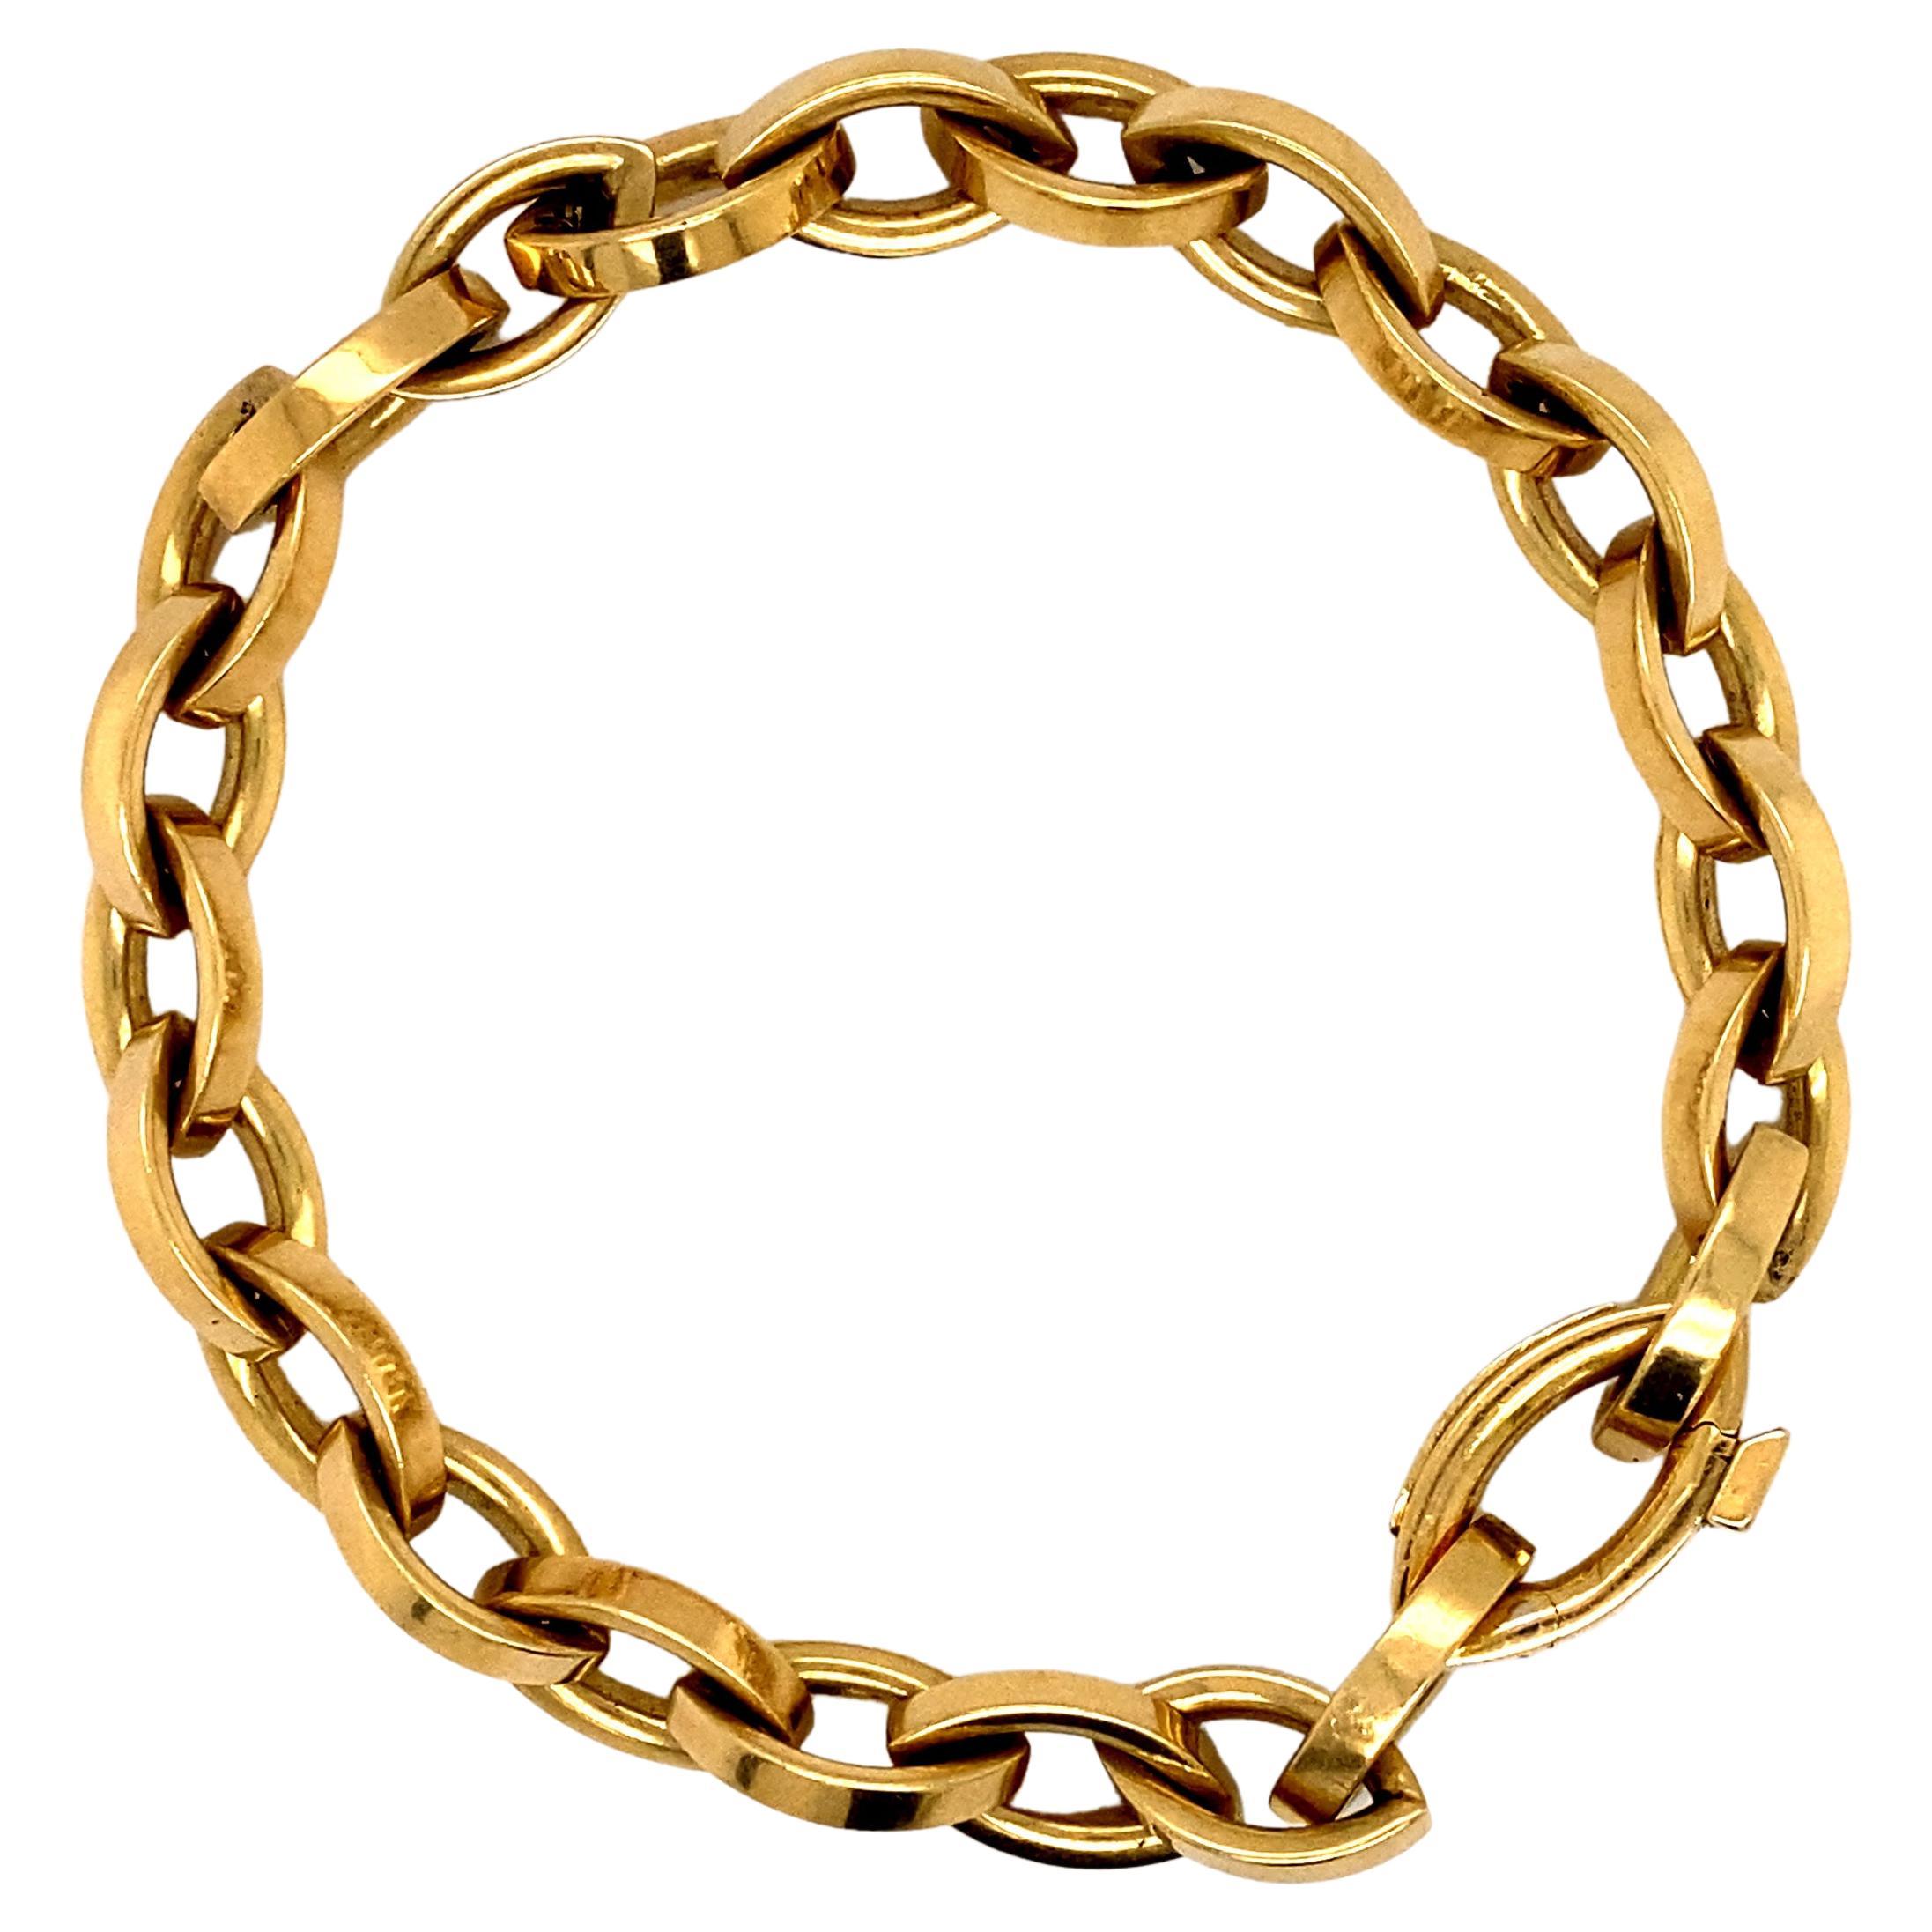 Tiffany & Co. Oval Link Chain Bracelet in 18 Karat Gold